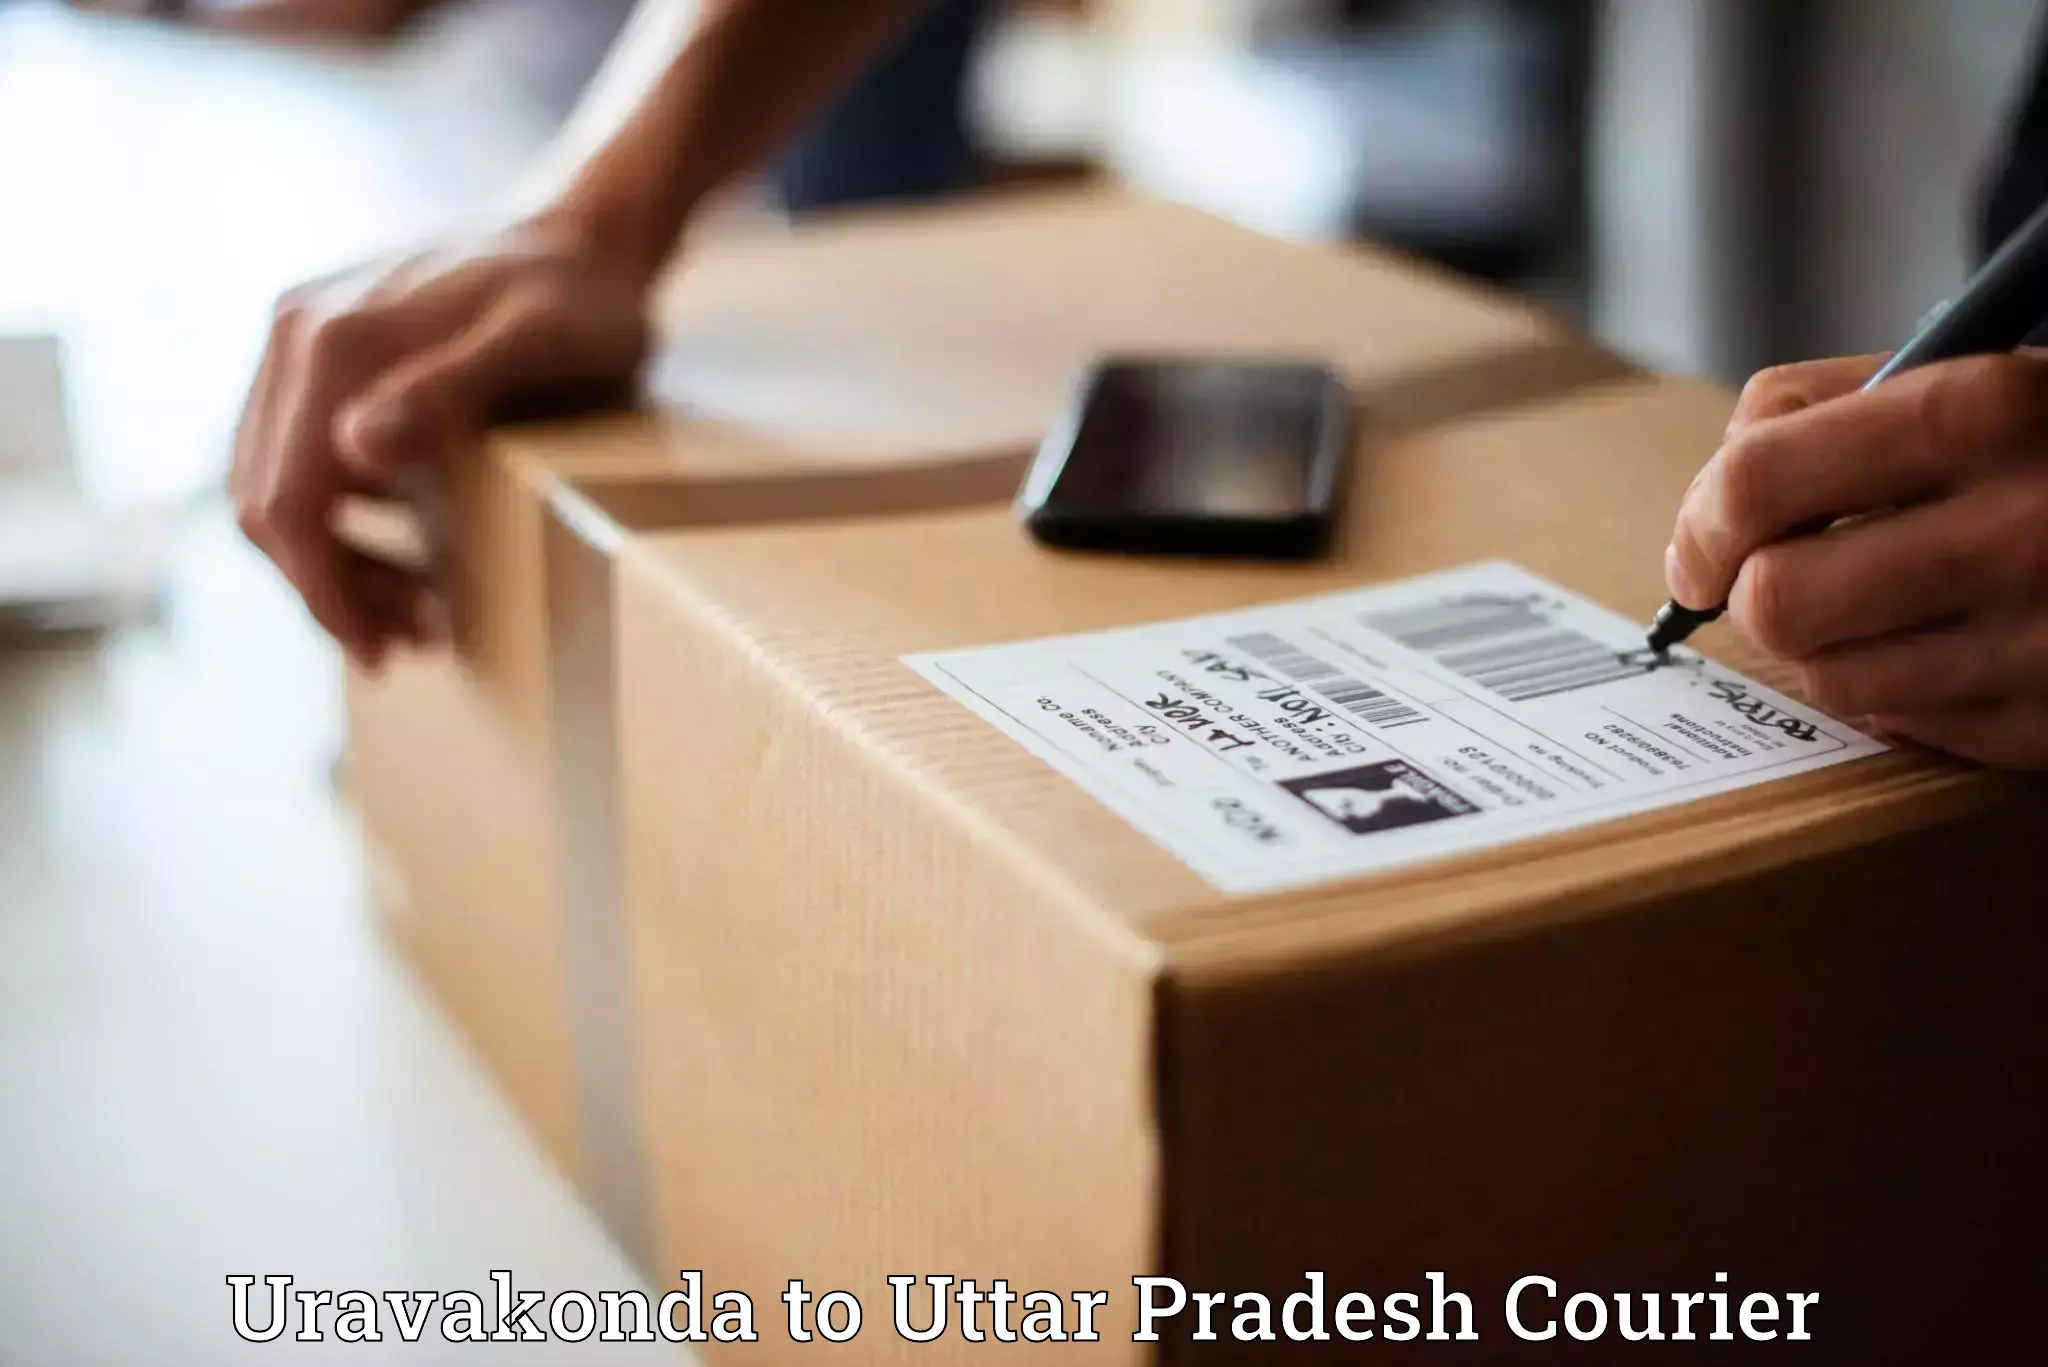 Full-service courier options Uravakonda to Mahasi